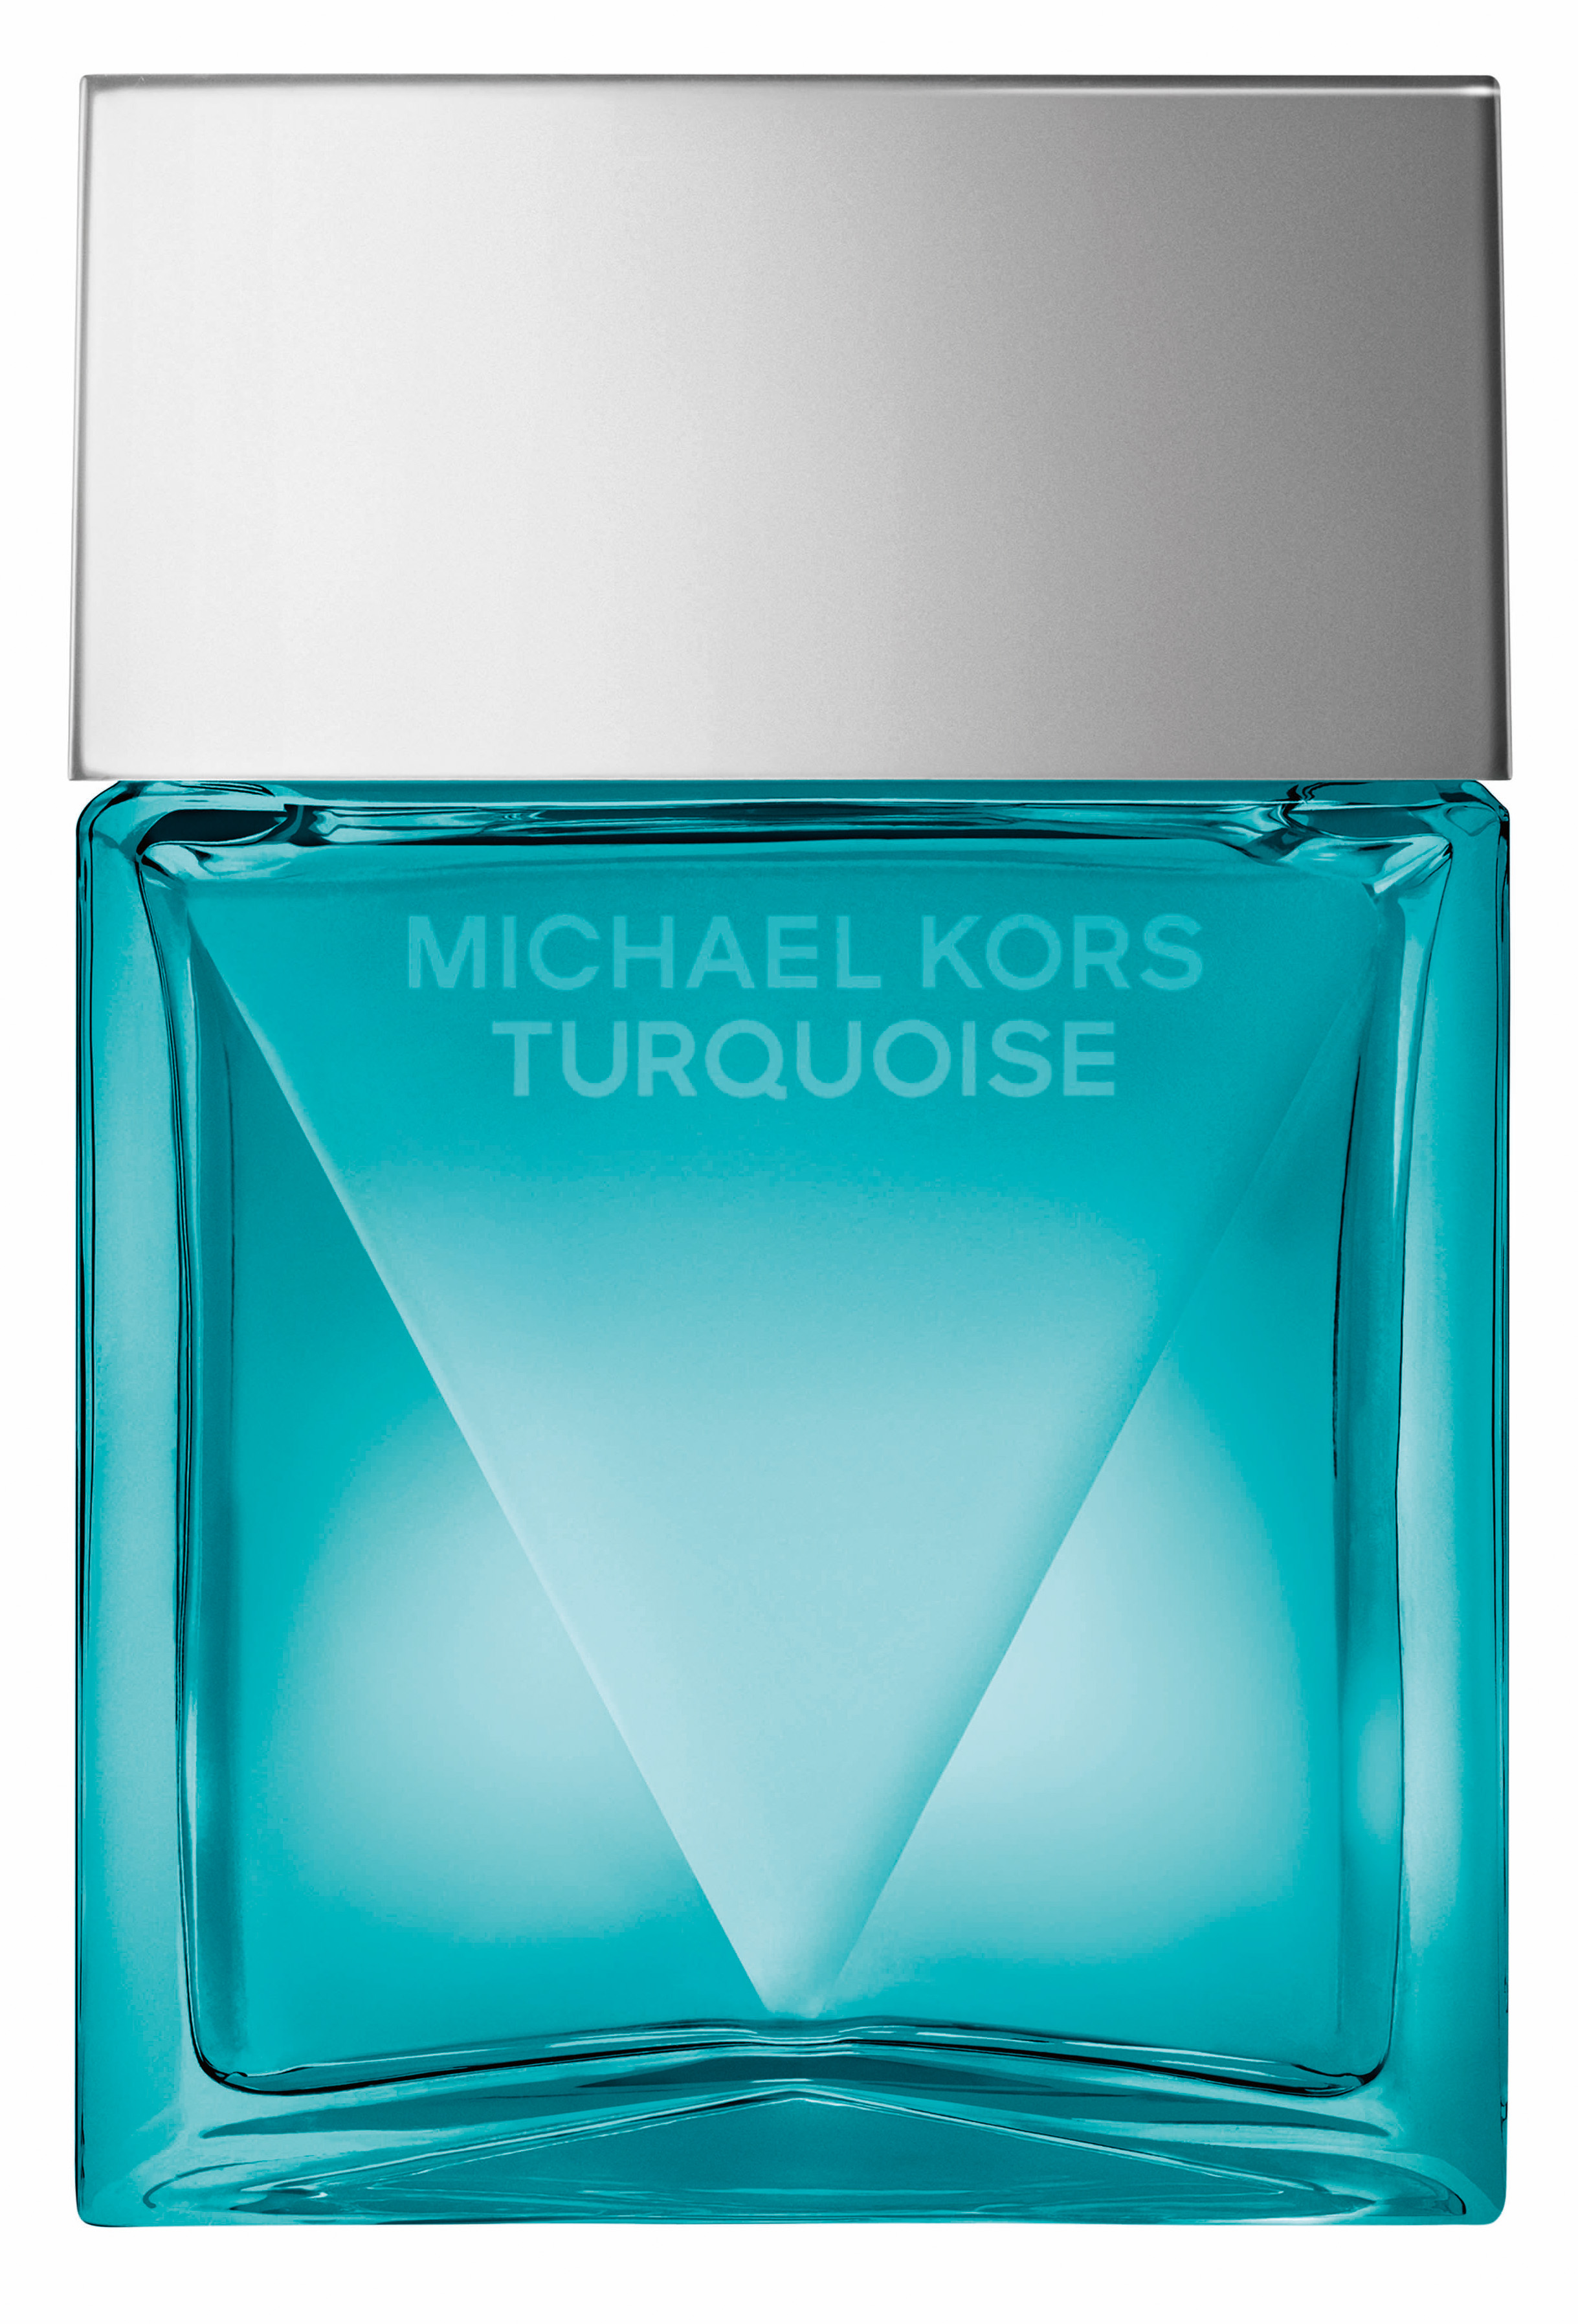 MICHAEL KORS Turquoise Eau de Parfum - Highendlove